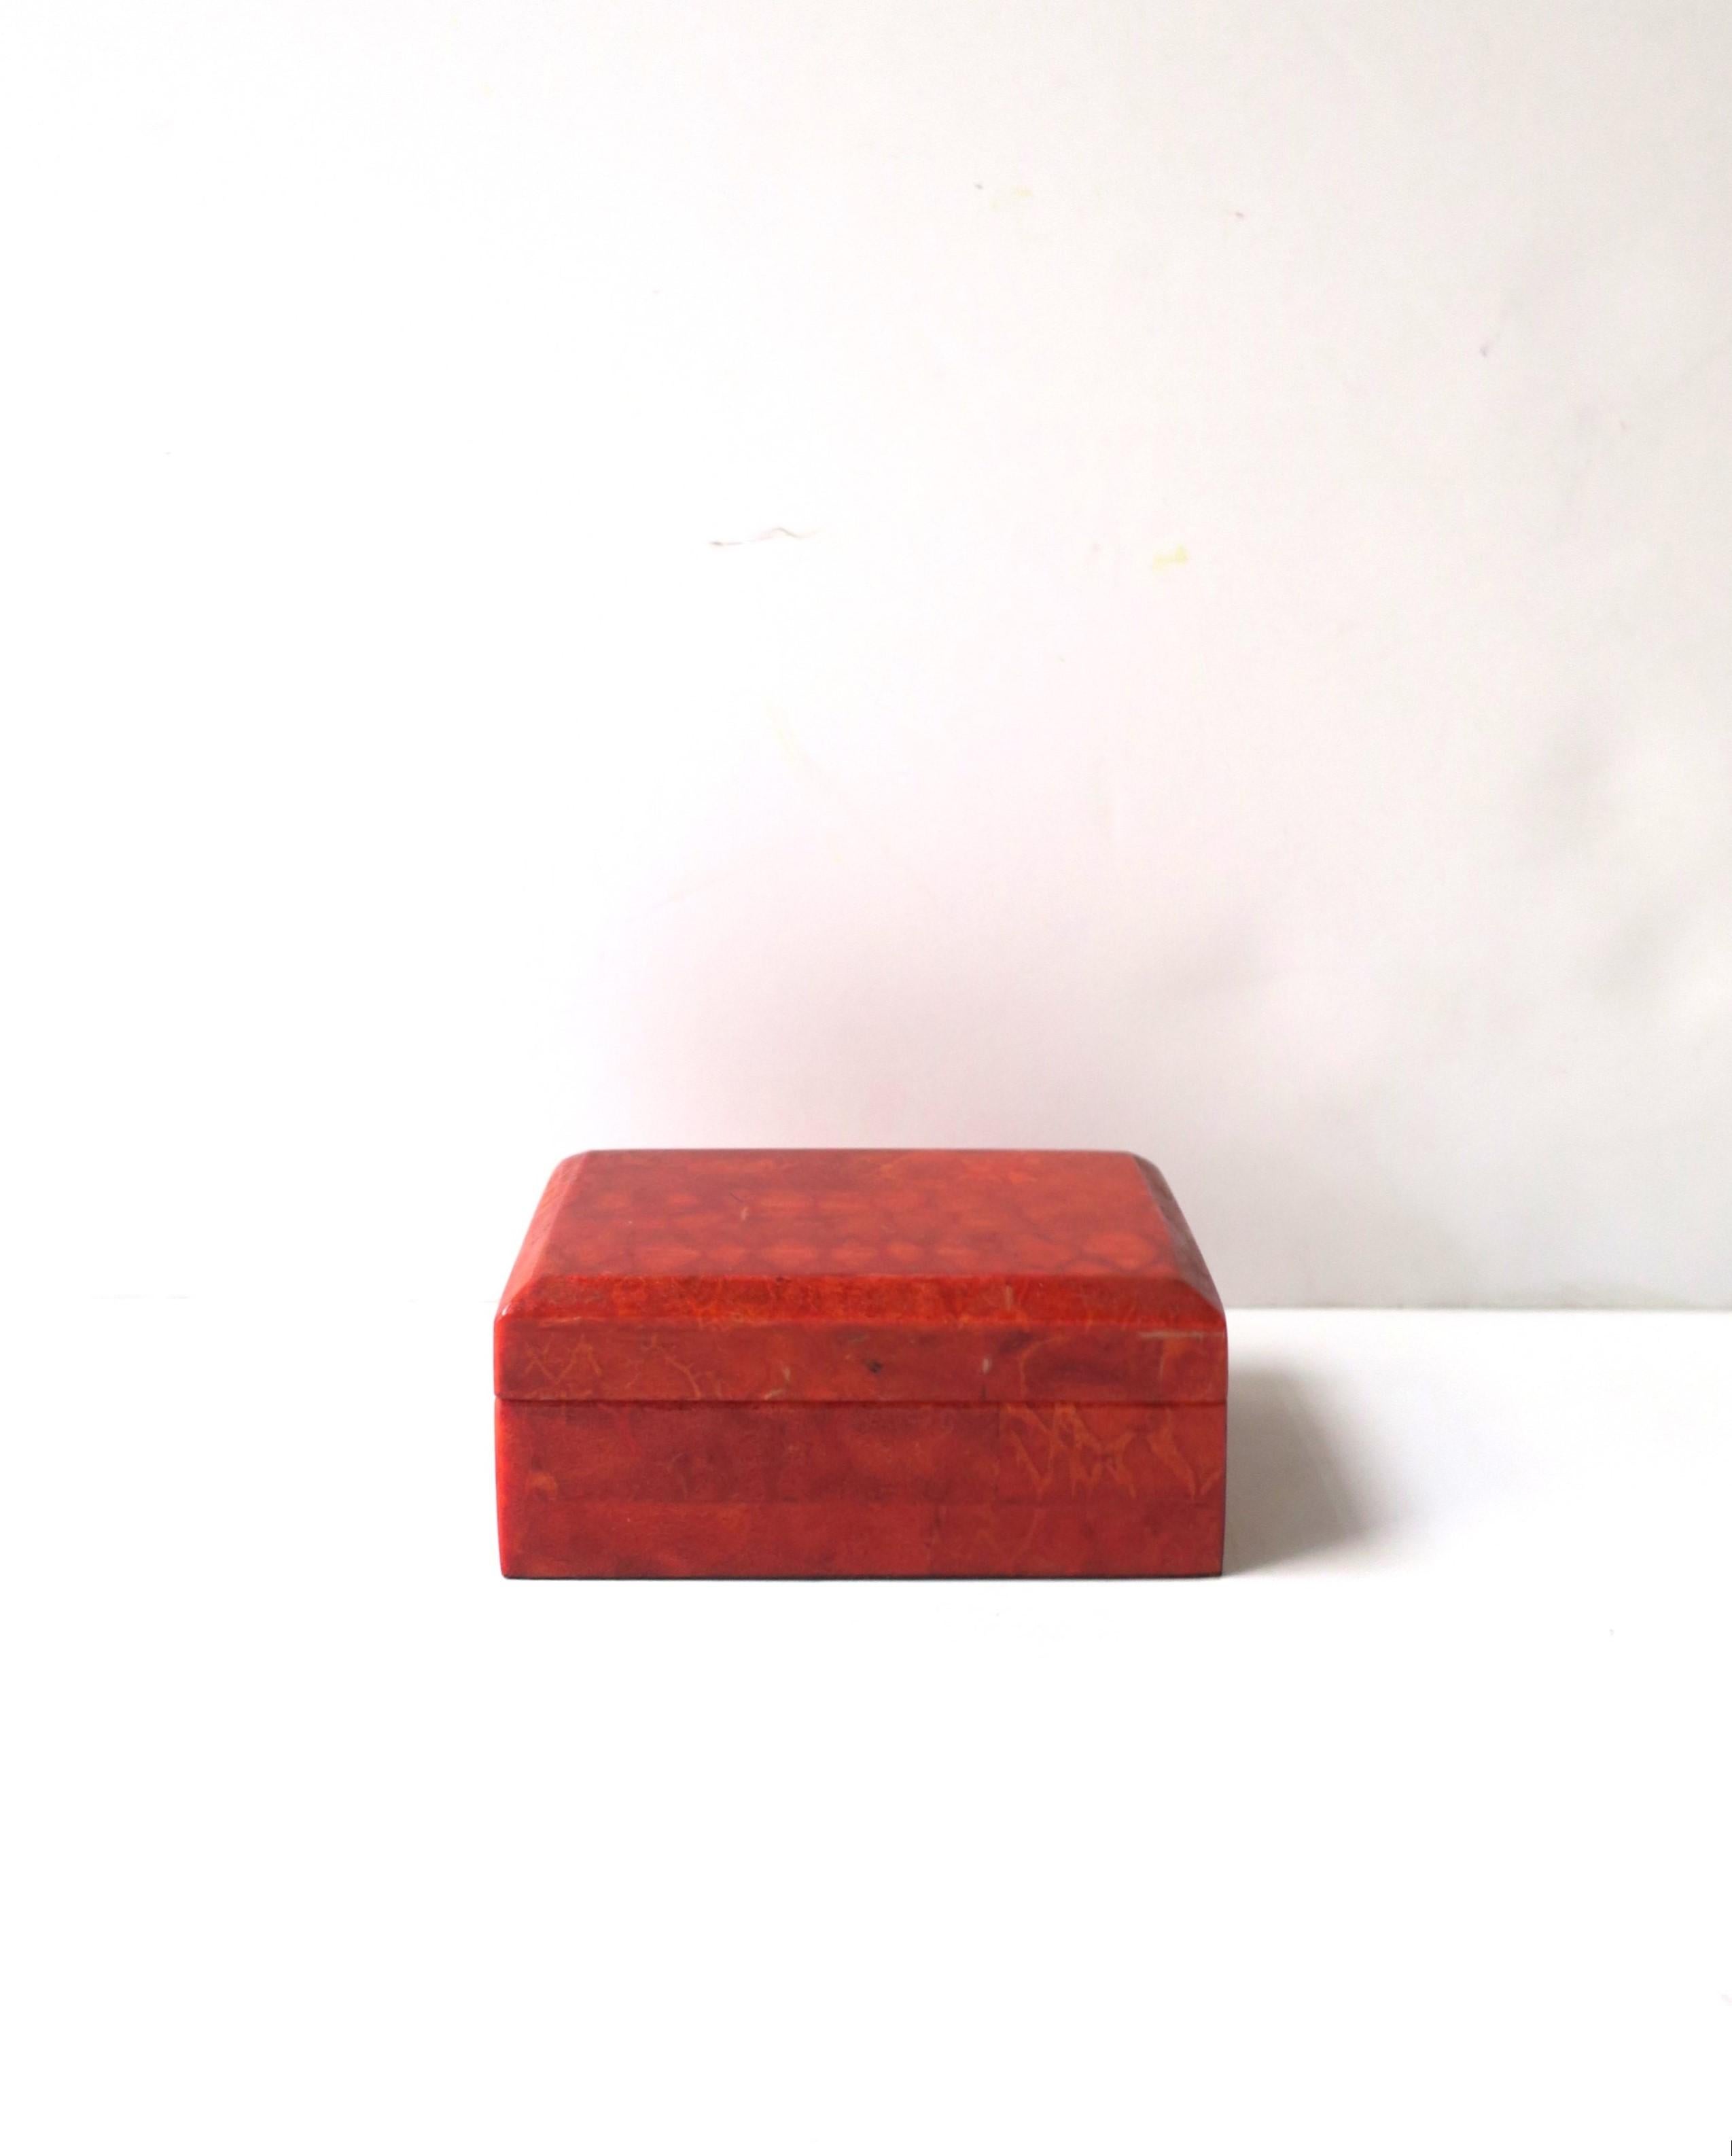 Une petite boîte à bijoux en résine rouge stratifiée sur bois. Une boîte pratique pour ranger des bijoux (comme illustré) ou d'autres petits objets sur un bureau, une coiffeuse, une table de chevet, une commode, sur un livre, etc. Nombreuses